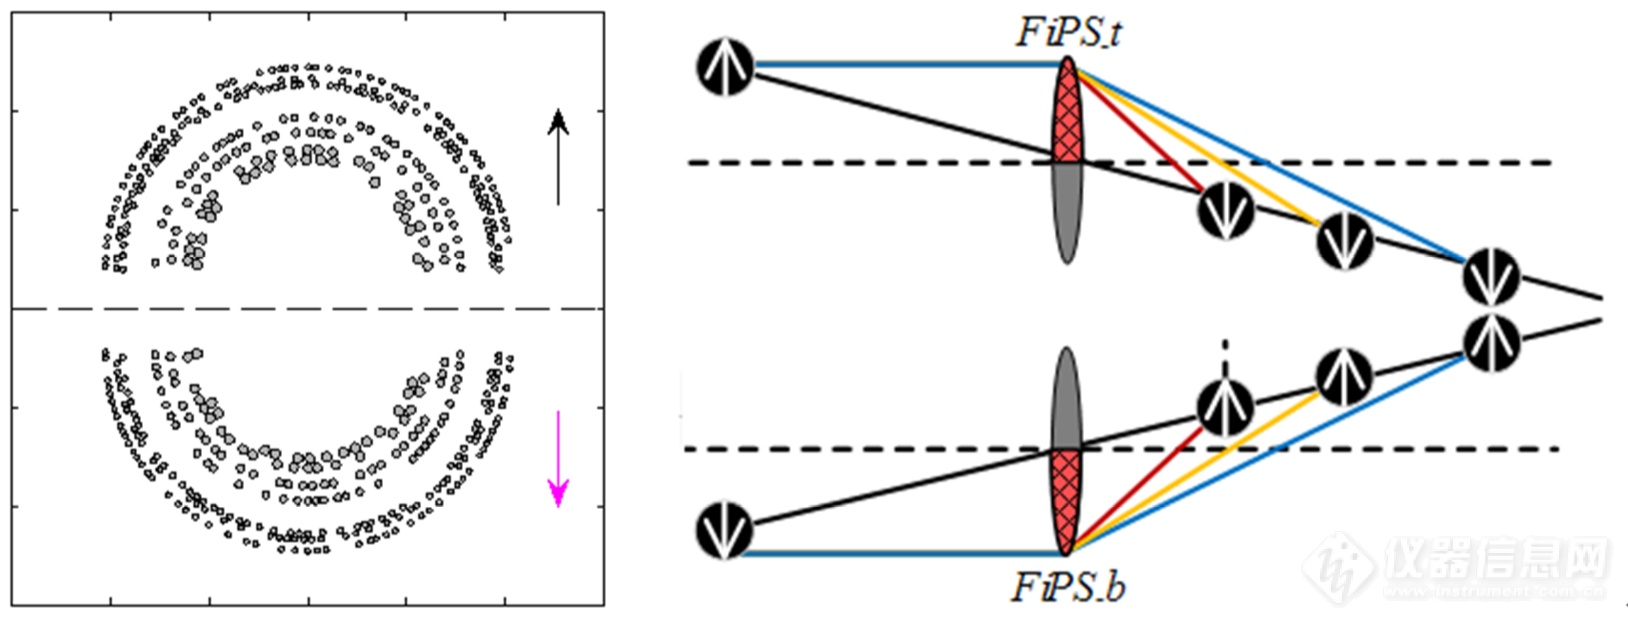 斐波那契-比累对切光子筛的原理图.png